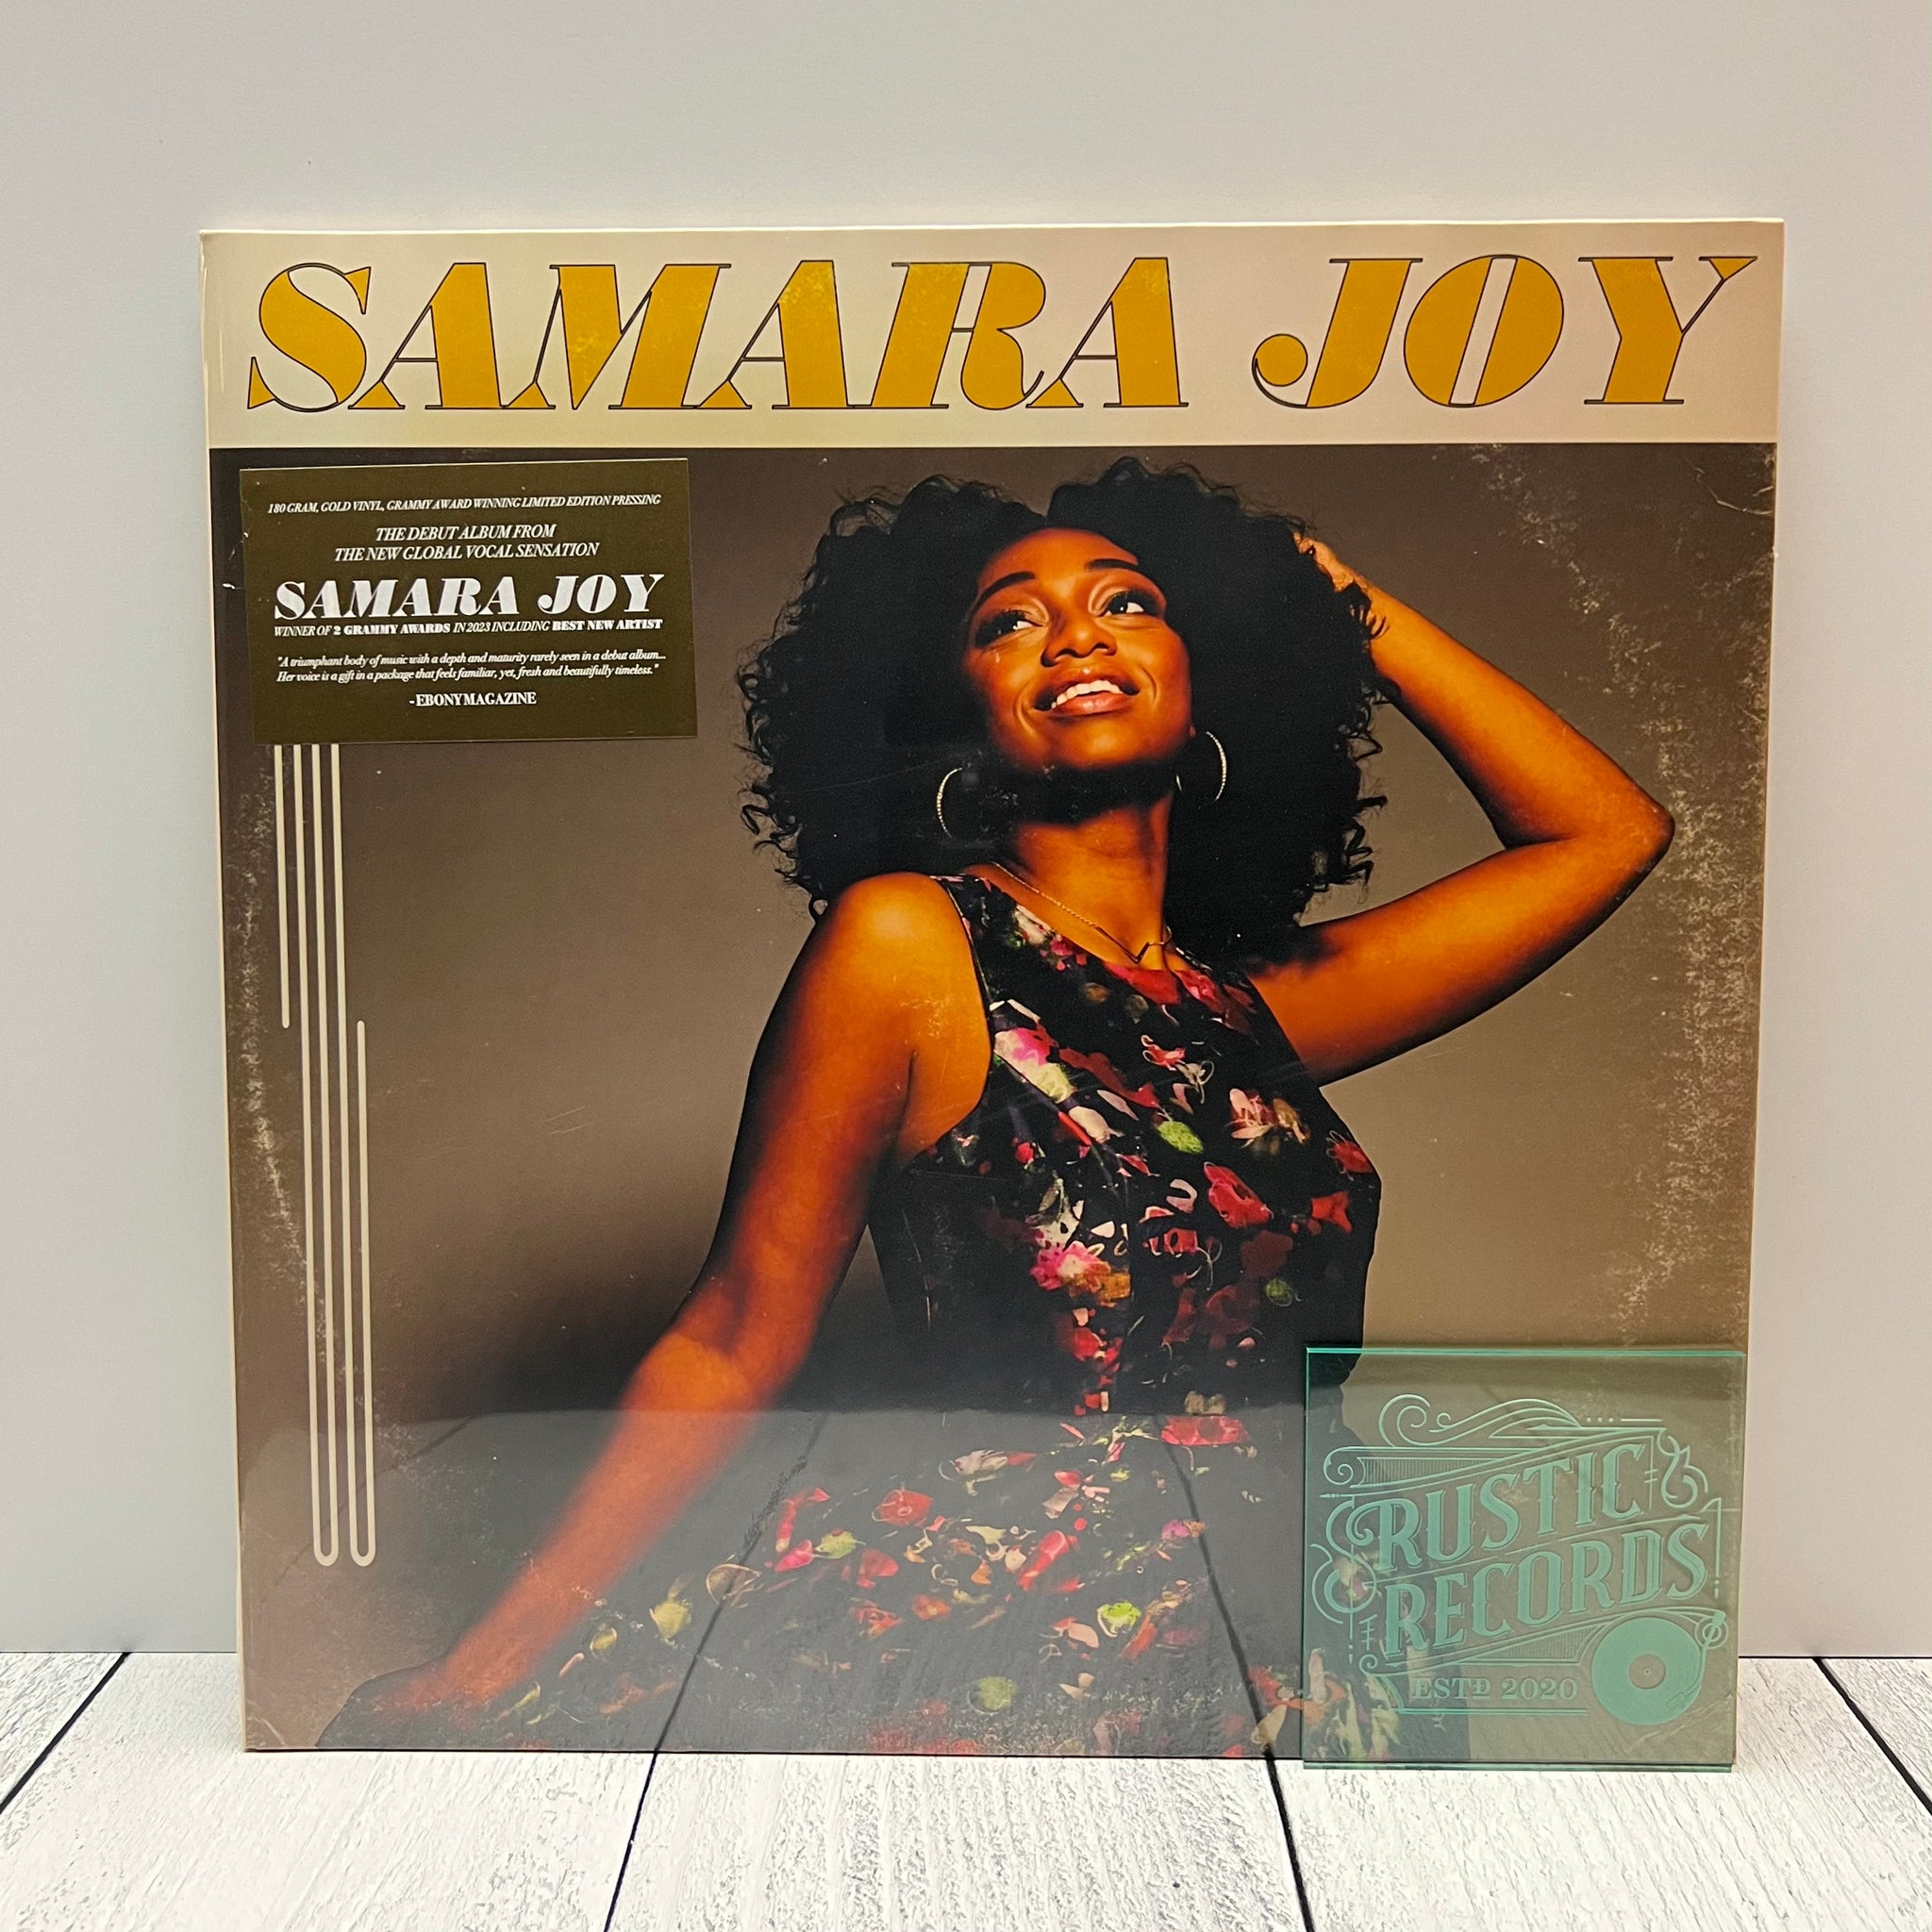 Samara Joy - Samara Joy (Gold Vinyl)